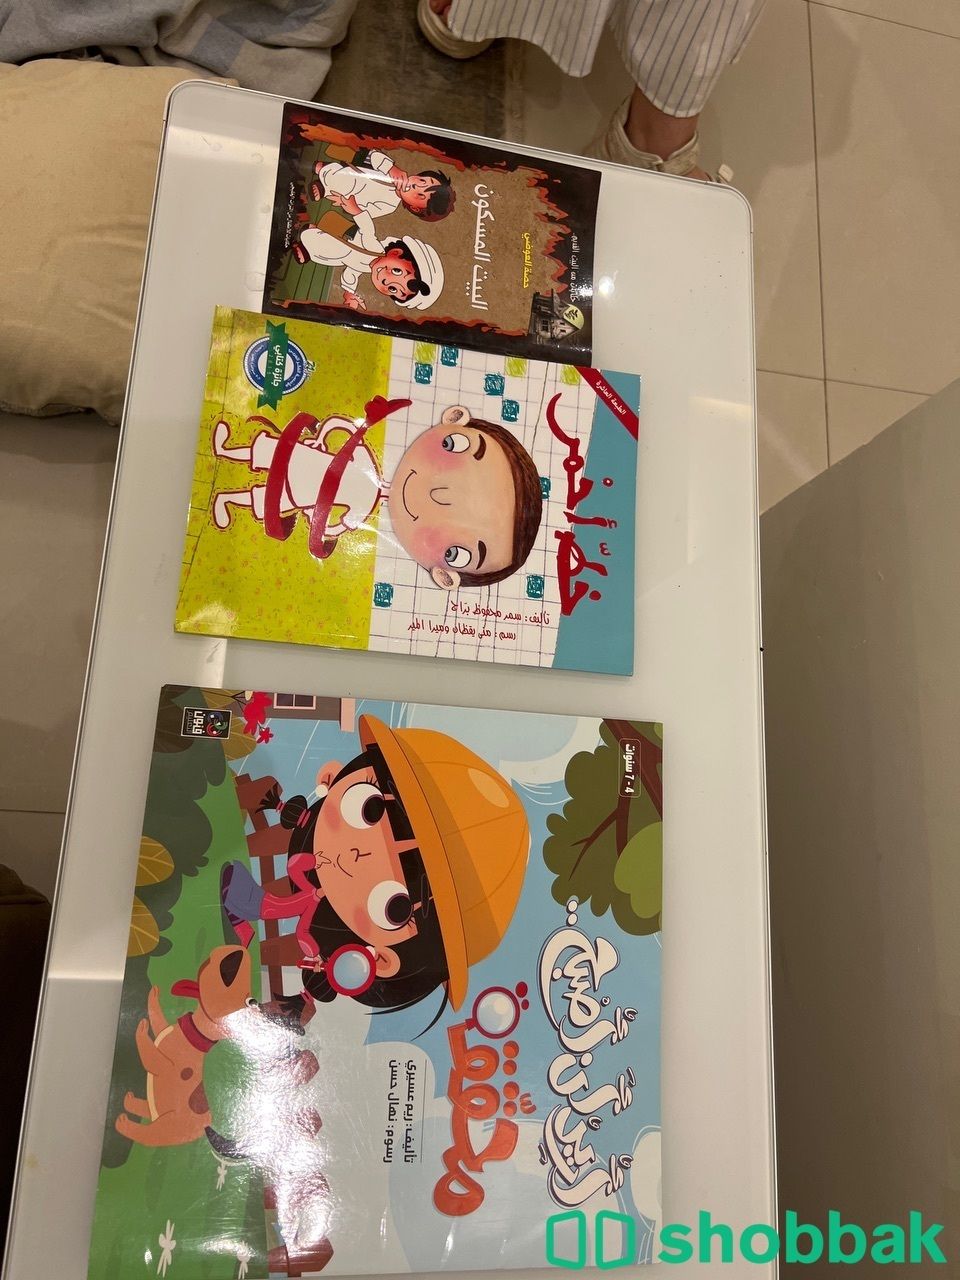 كتب للاطفال مفيدة بسعر مغري الرياض  Shobbak Saudi Arabia